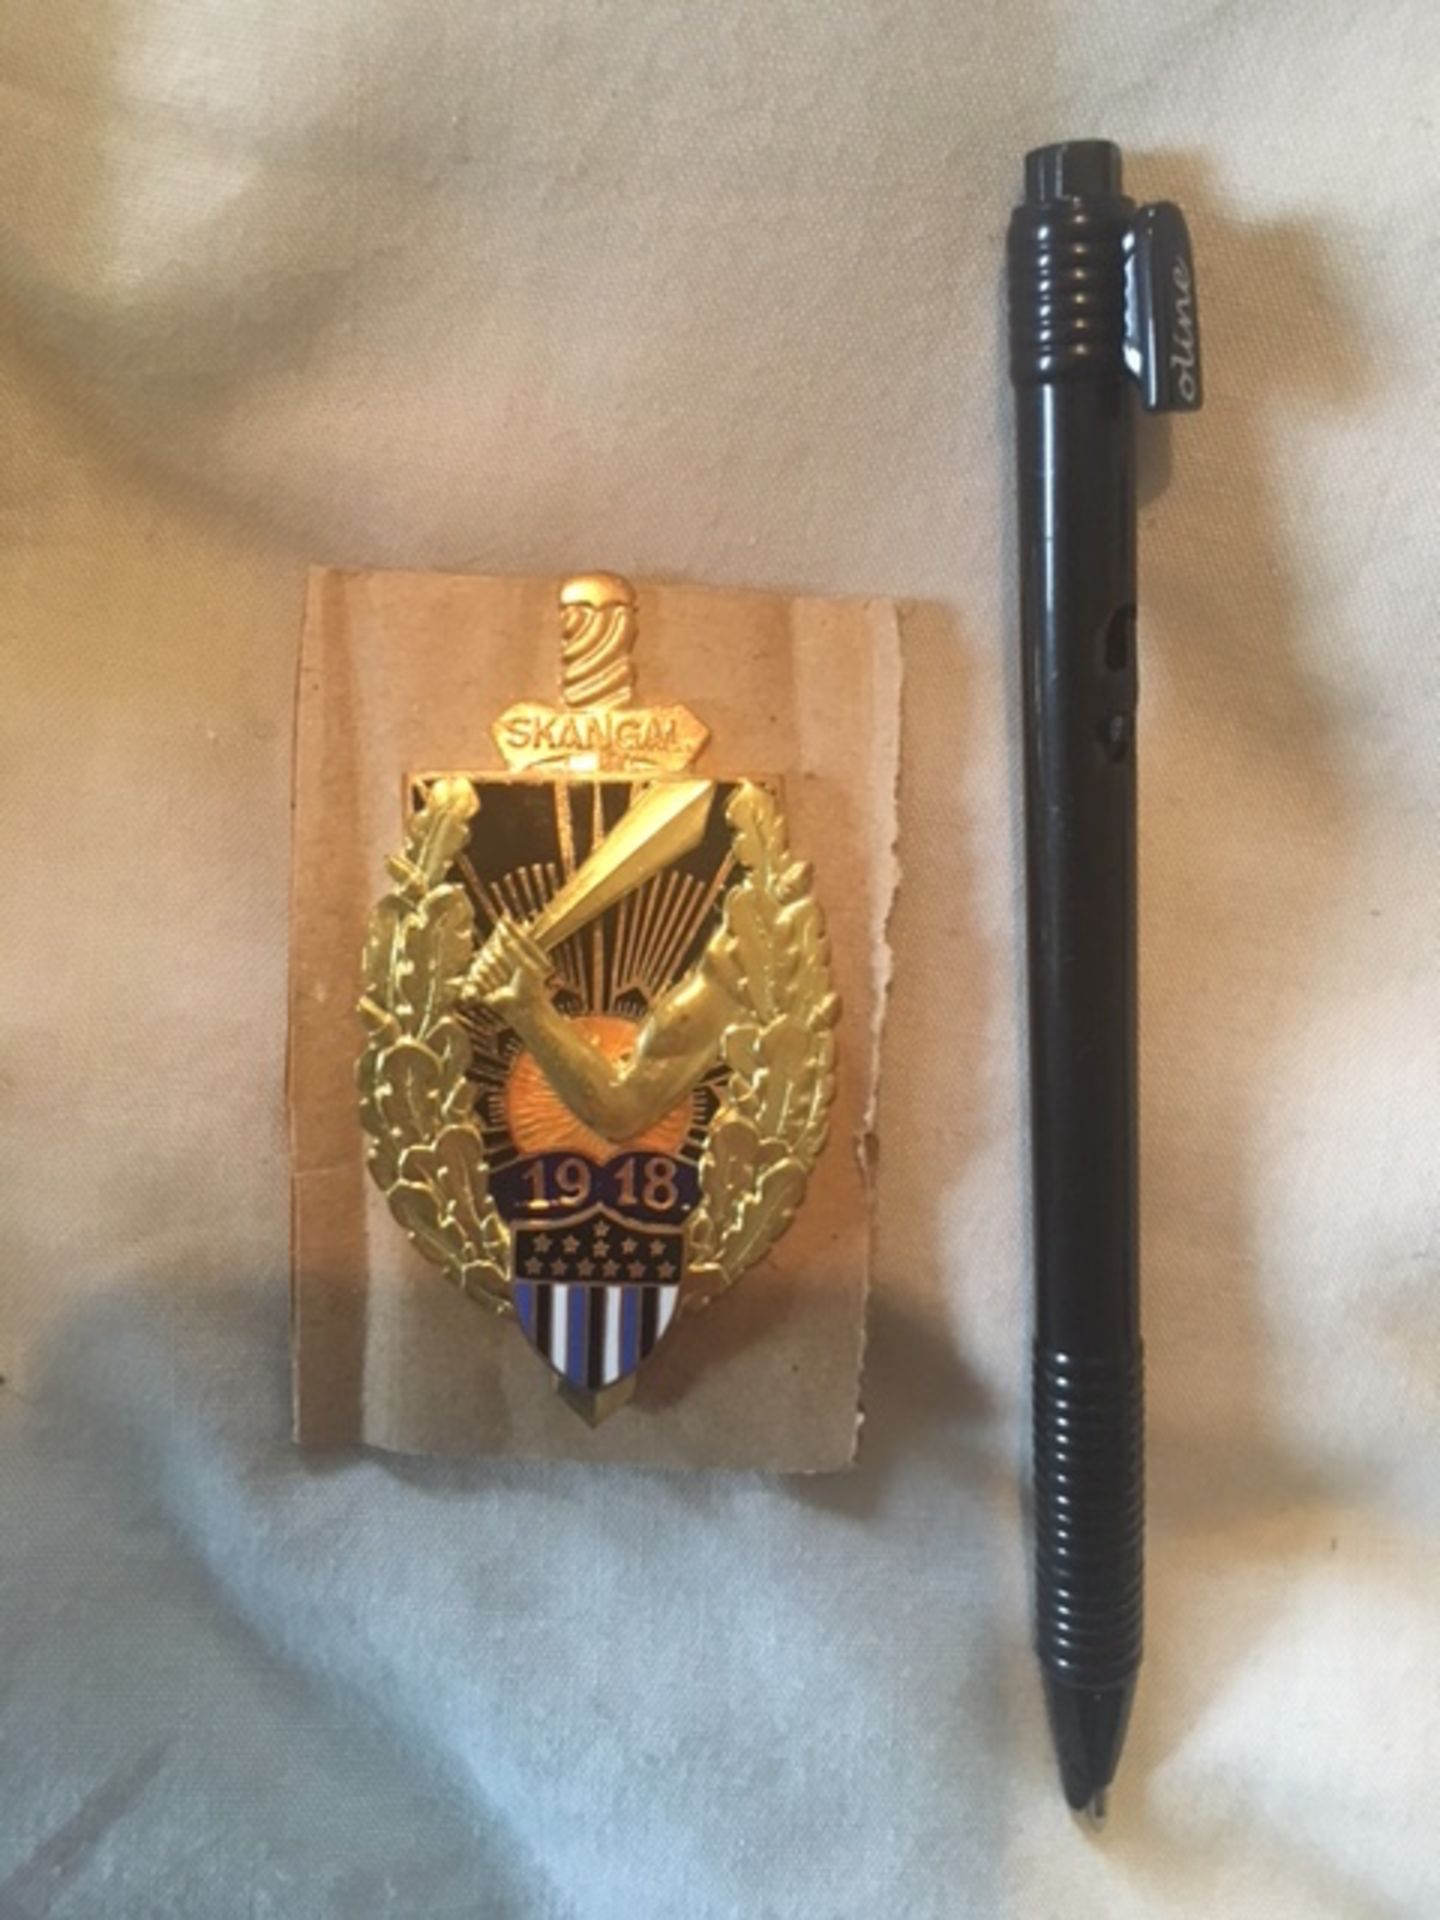 estonia presidential military guard badge - Image 2 of 3